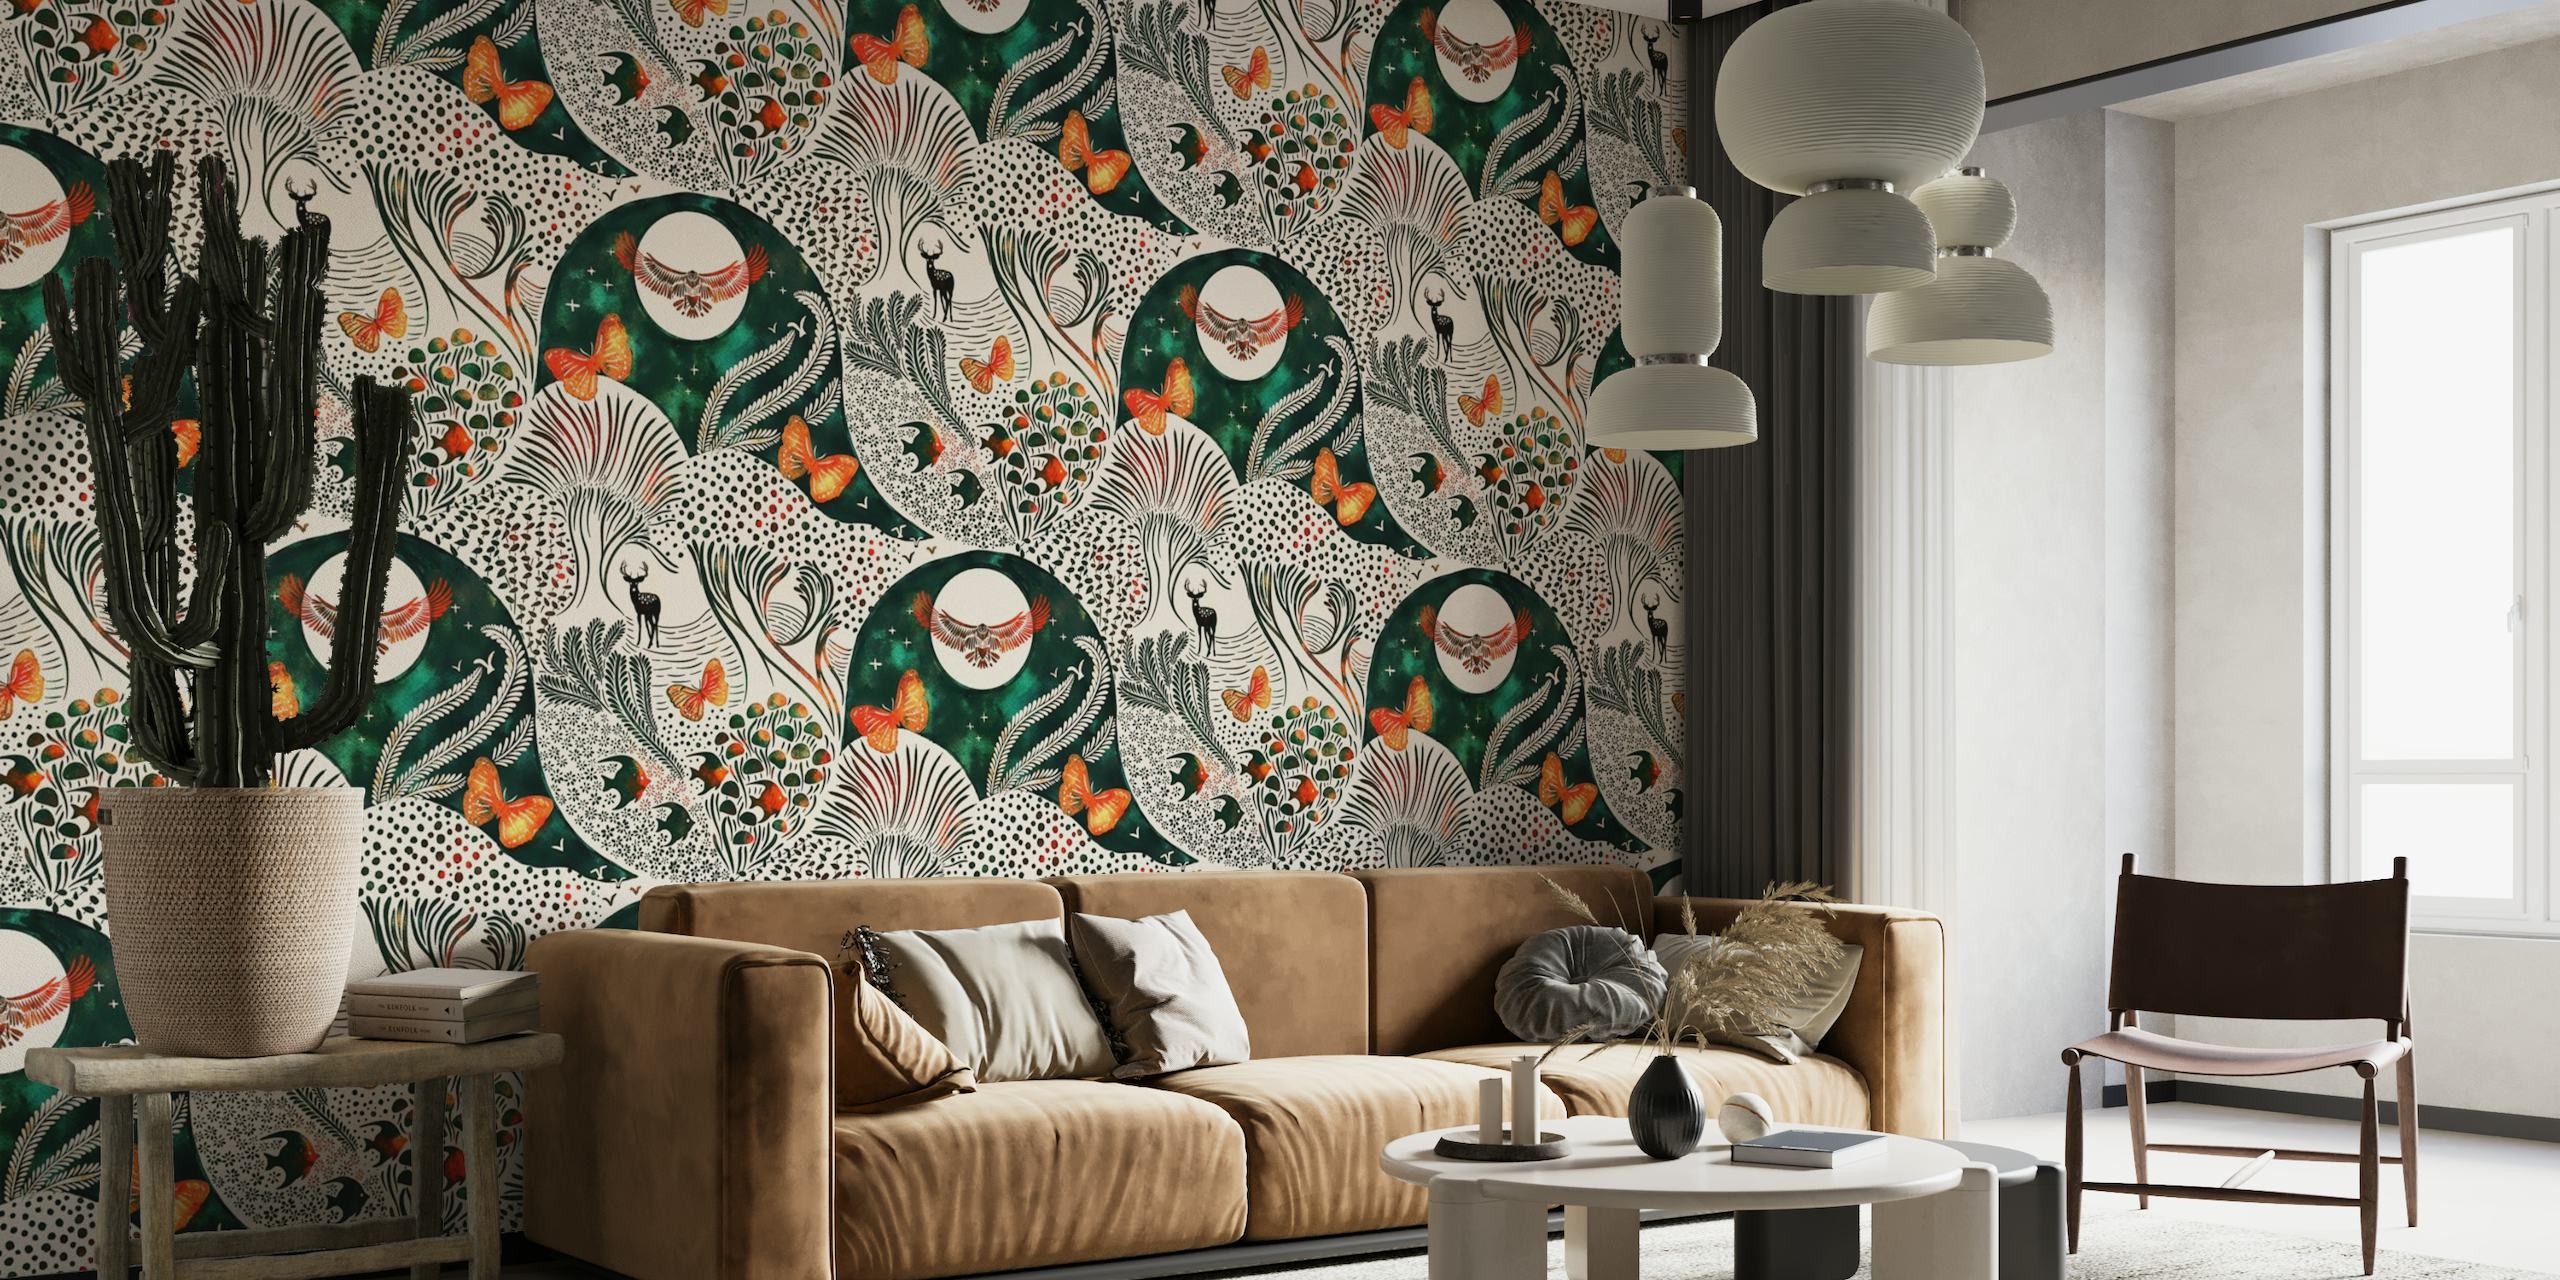 Mural de pared inspirado en la fantasía con árboles y animales estilizados en un patrón fascinante